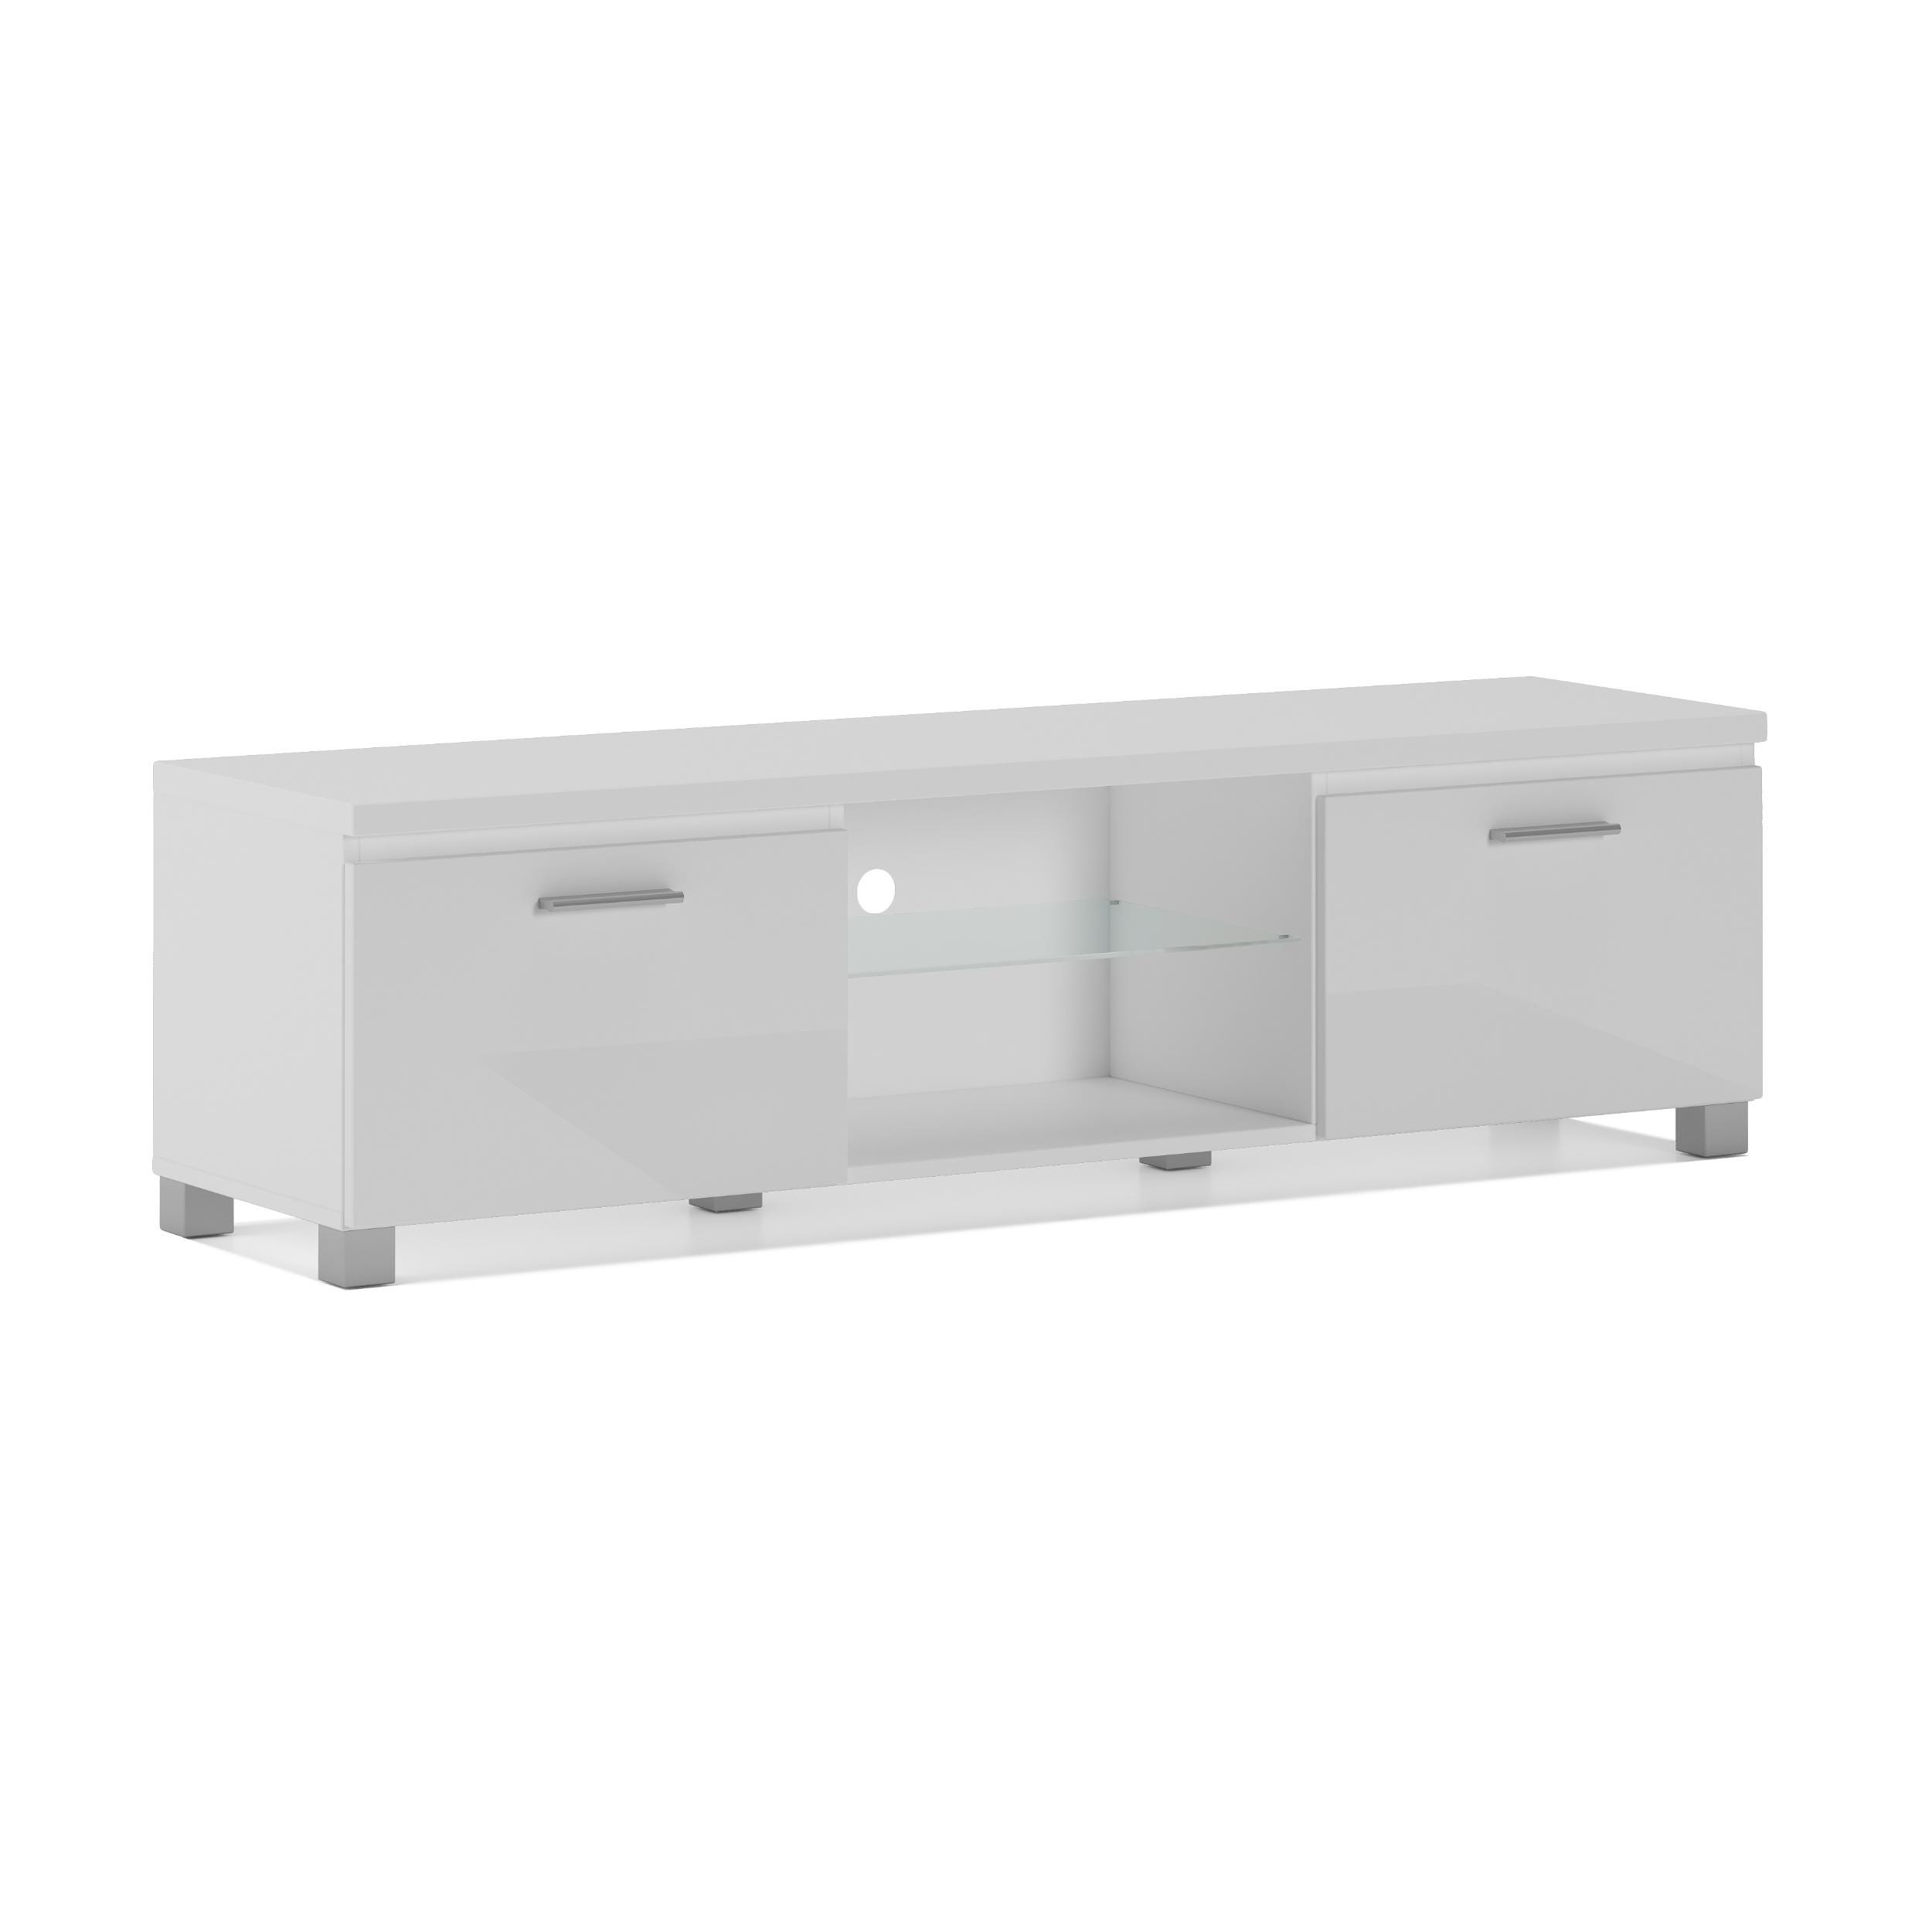 Mueble TV gris y blanco - mueble separador de salón